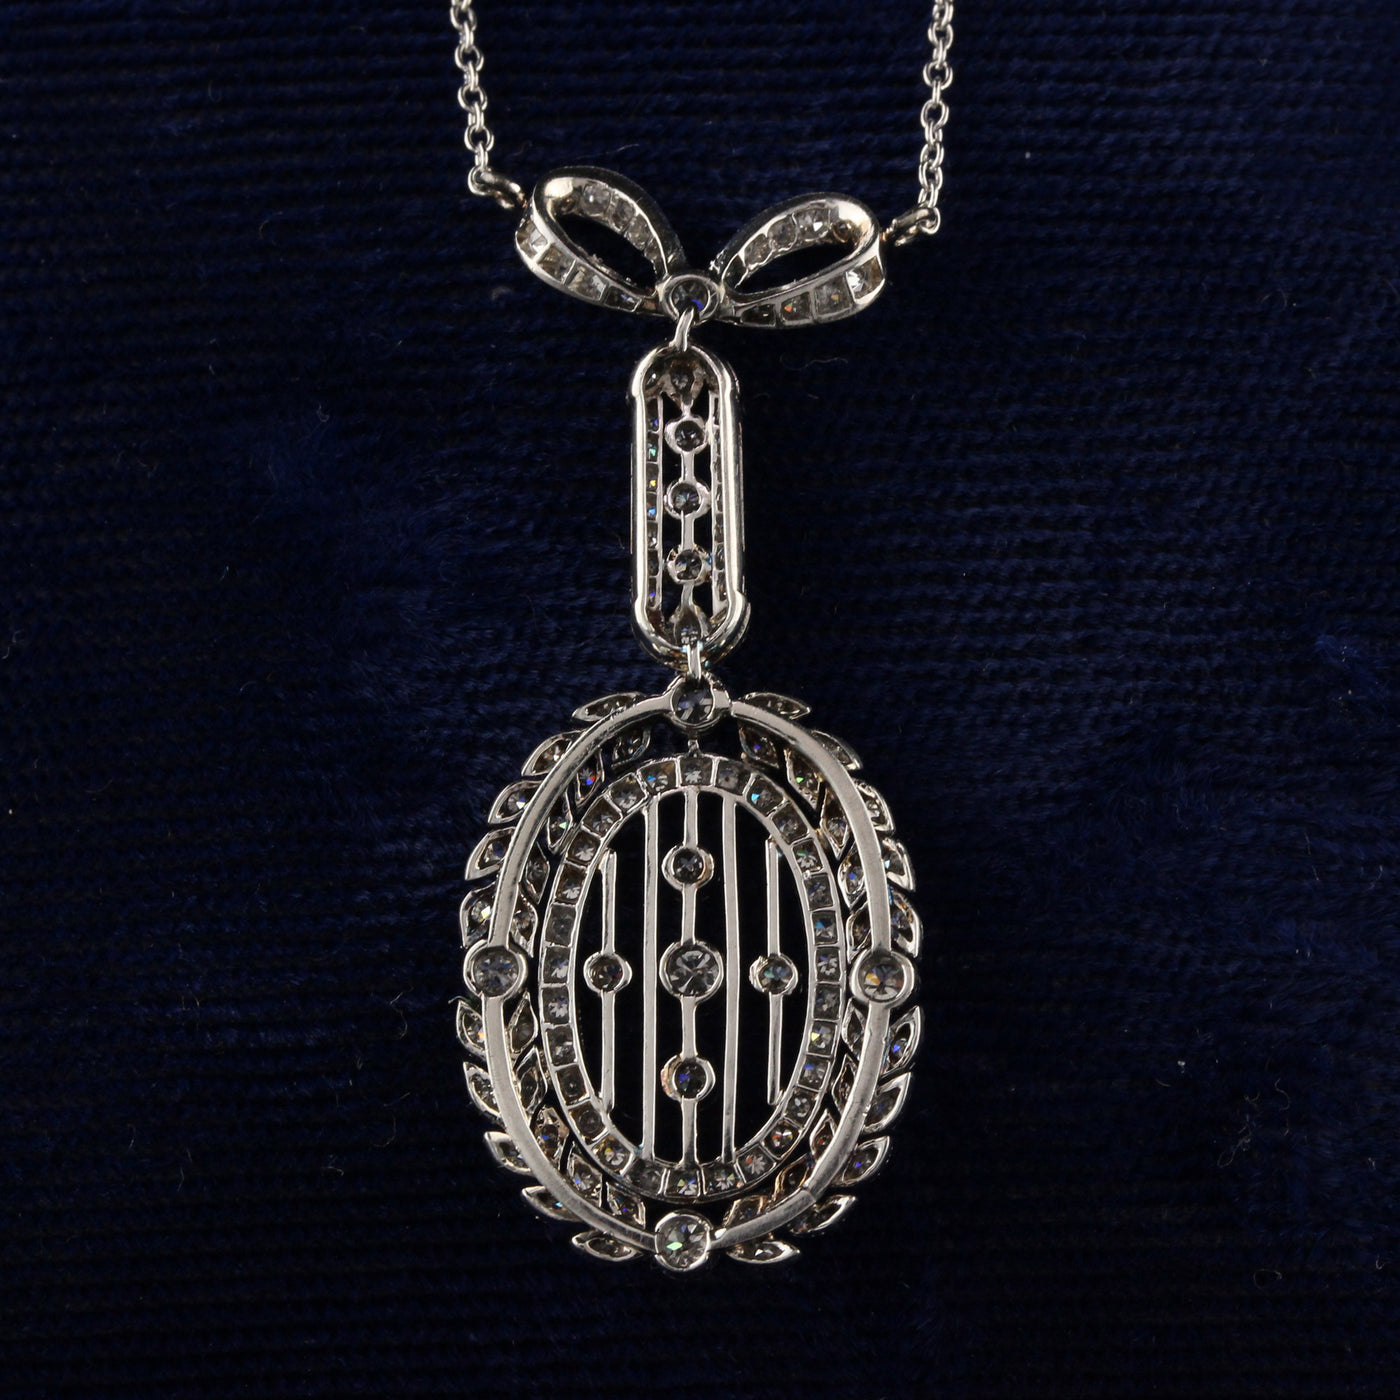 Antique Edwardian Platinum Wreath Bow Diamond Pendant Necklace